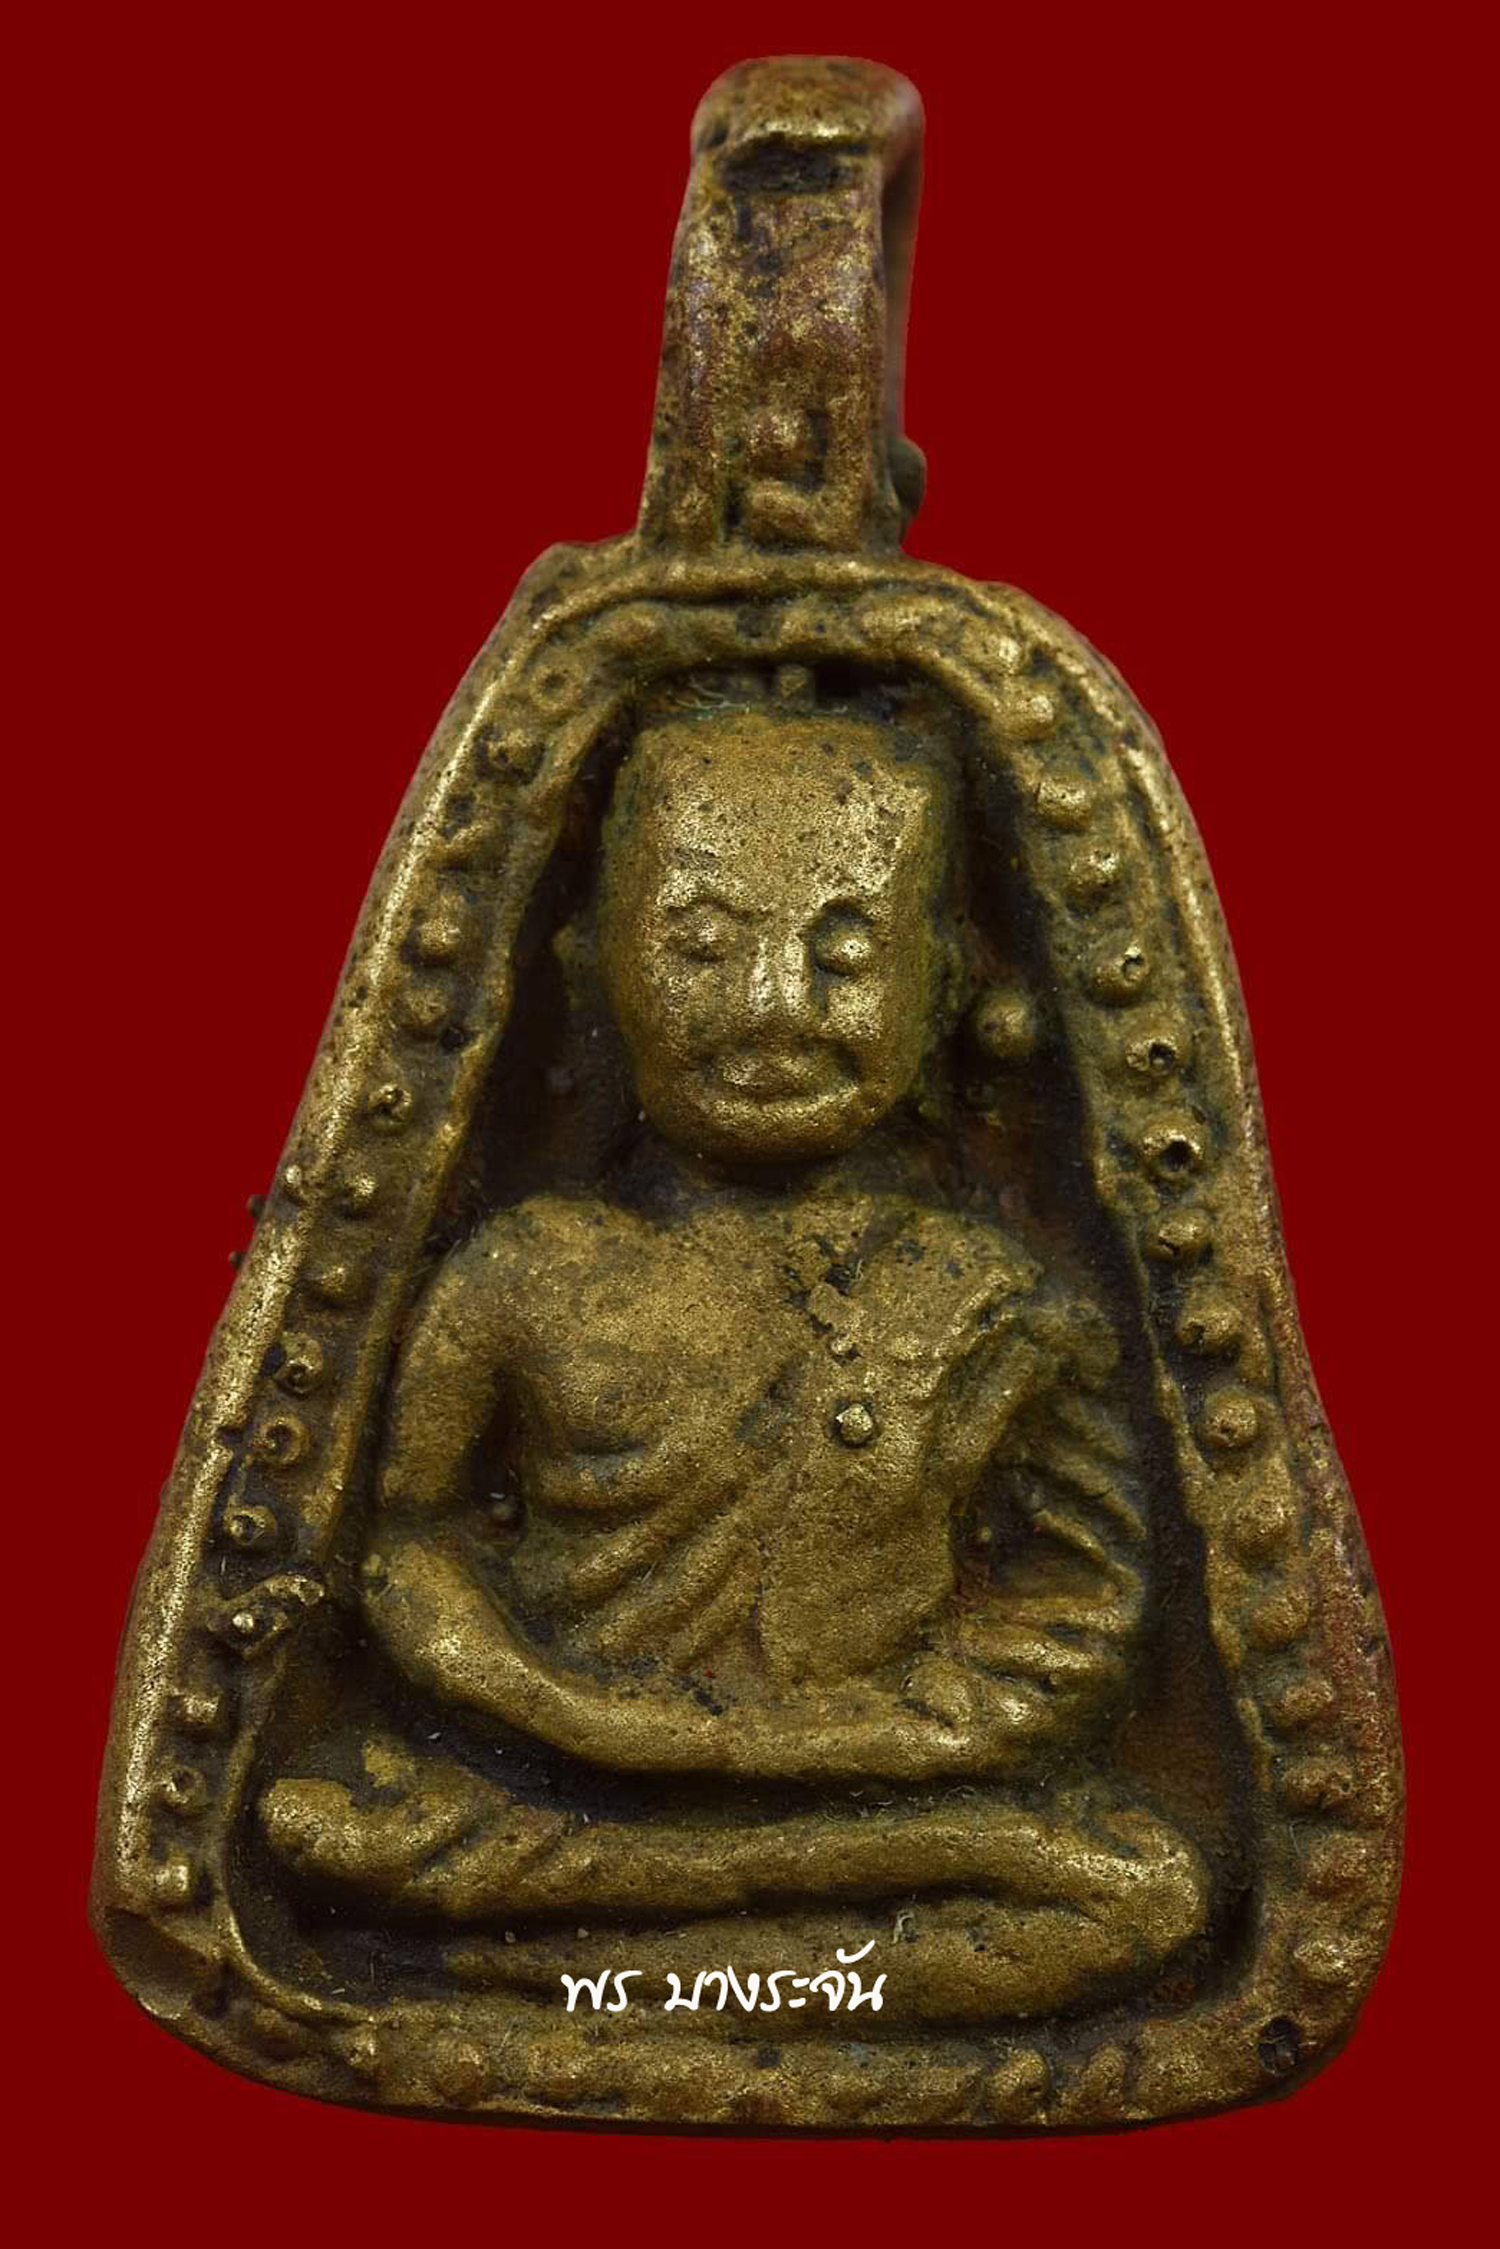 รูปหล่อหลวงพ่อเงินบางคลาน พิมพ์จอบใหญ่ phra lp ngern statue wat bangklan antique talisman old thai buddha amulet 銮菩银 财佛, 鑾菩銀 大師